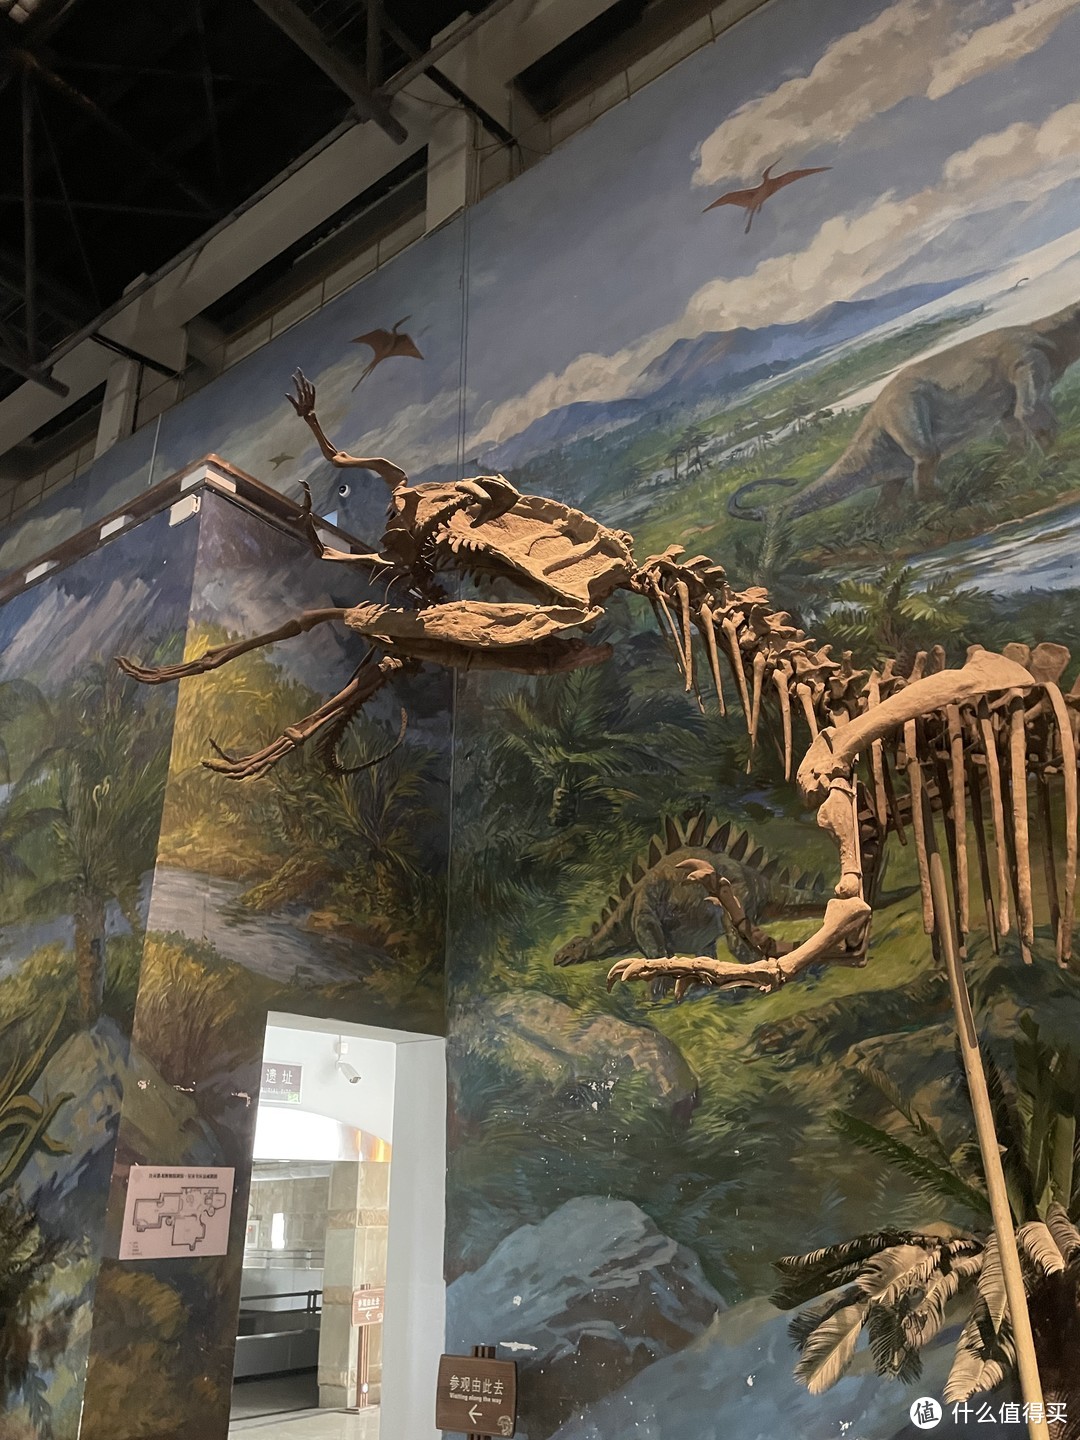 五一不知道去哪，还是宅家吗？不如带着孩子来自贡恐龙博物馆来个一眼一亿年的会面吧。